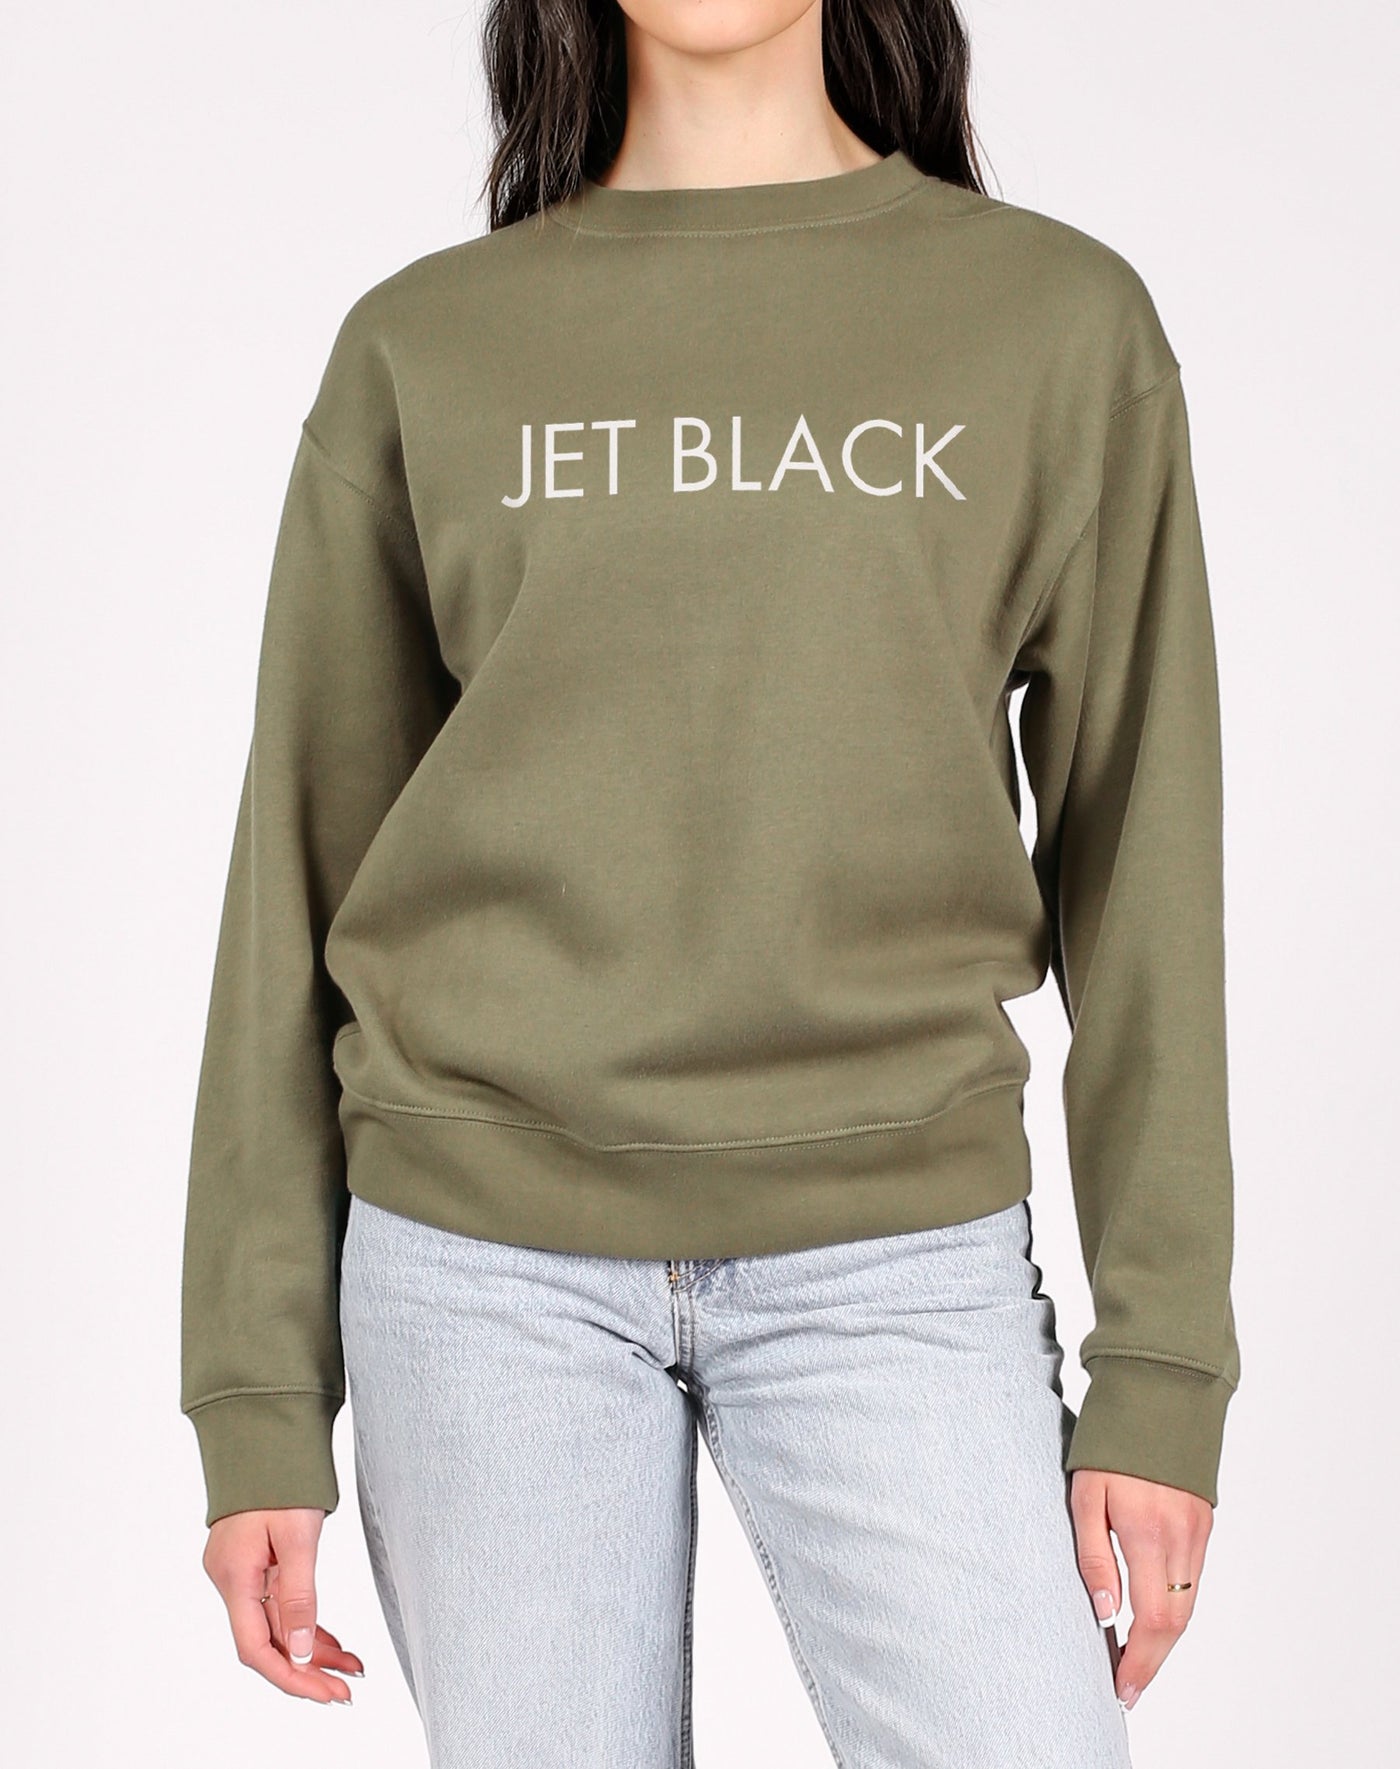 The "JET BLACK" Classic Crew Neck Sweatshirt | Olive